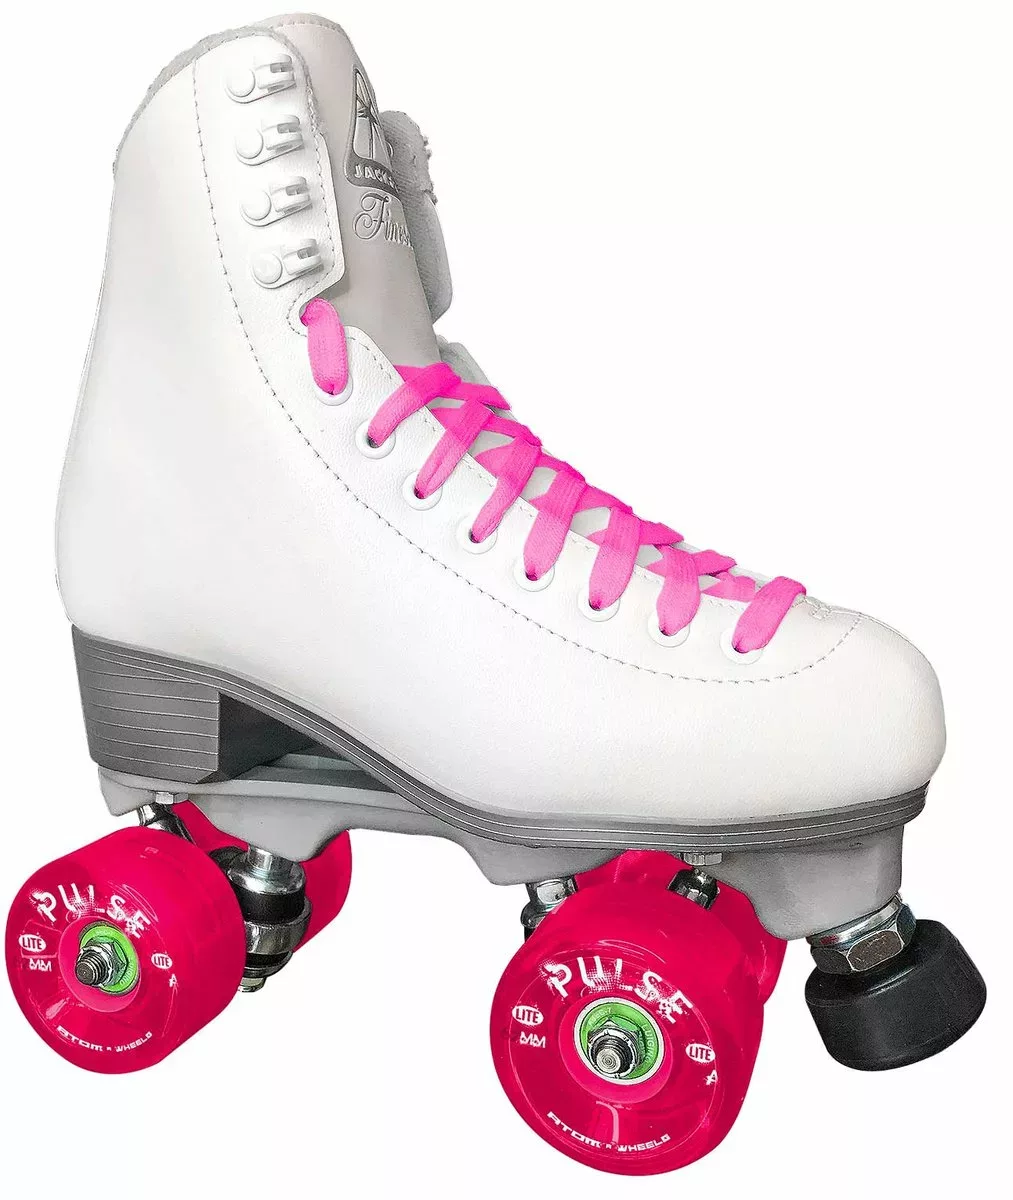 ATOM Jackson Finesse JR1054 White Quad Roller Skates – Nylon Plate – Outdoor Quad Roller Skates Women's and Girls' Quad Skates